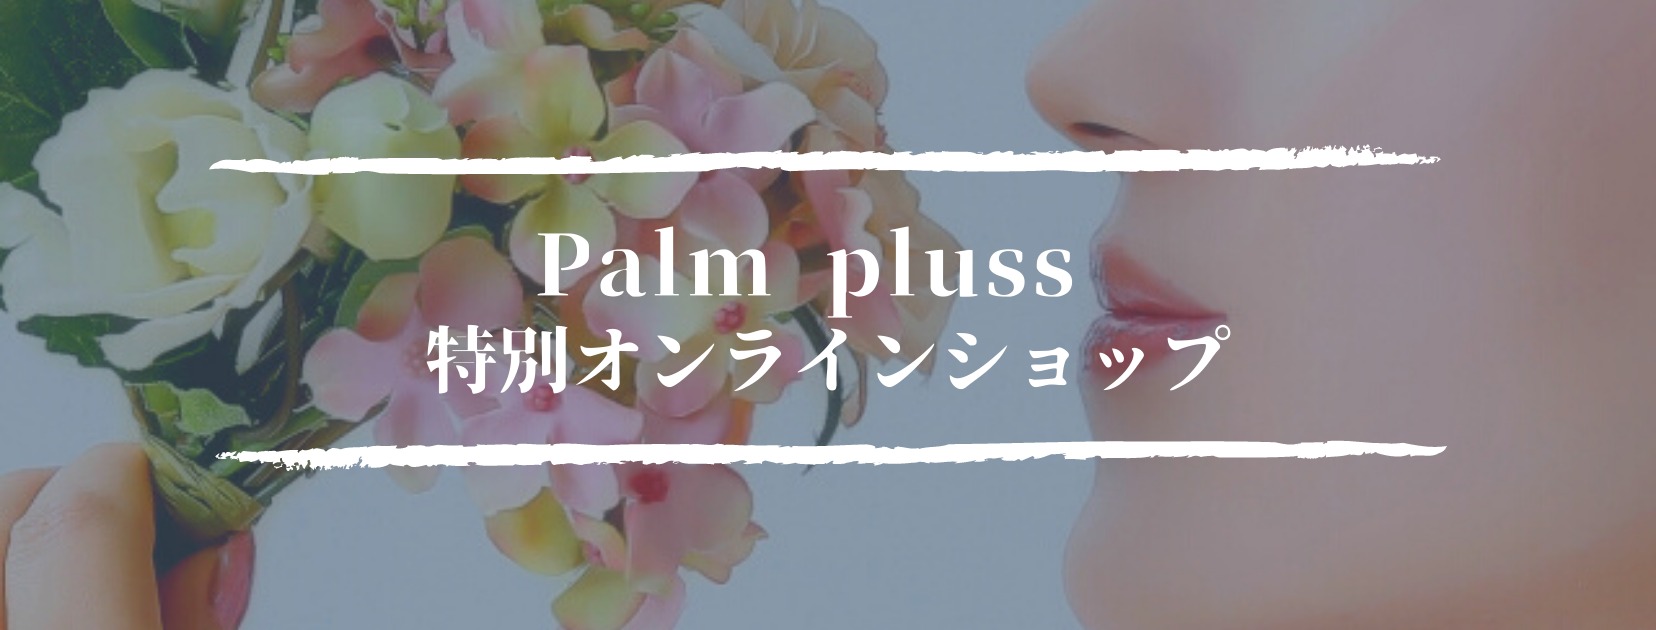 palmpluss